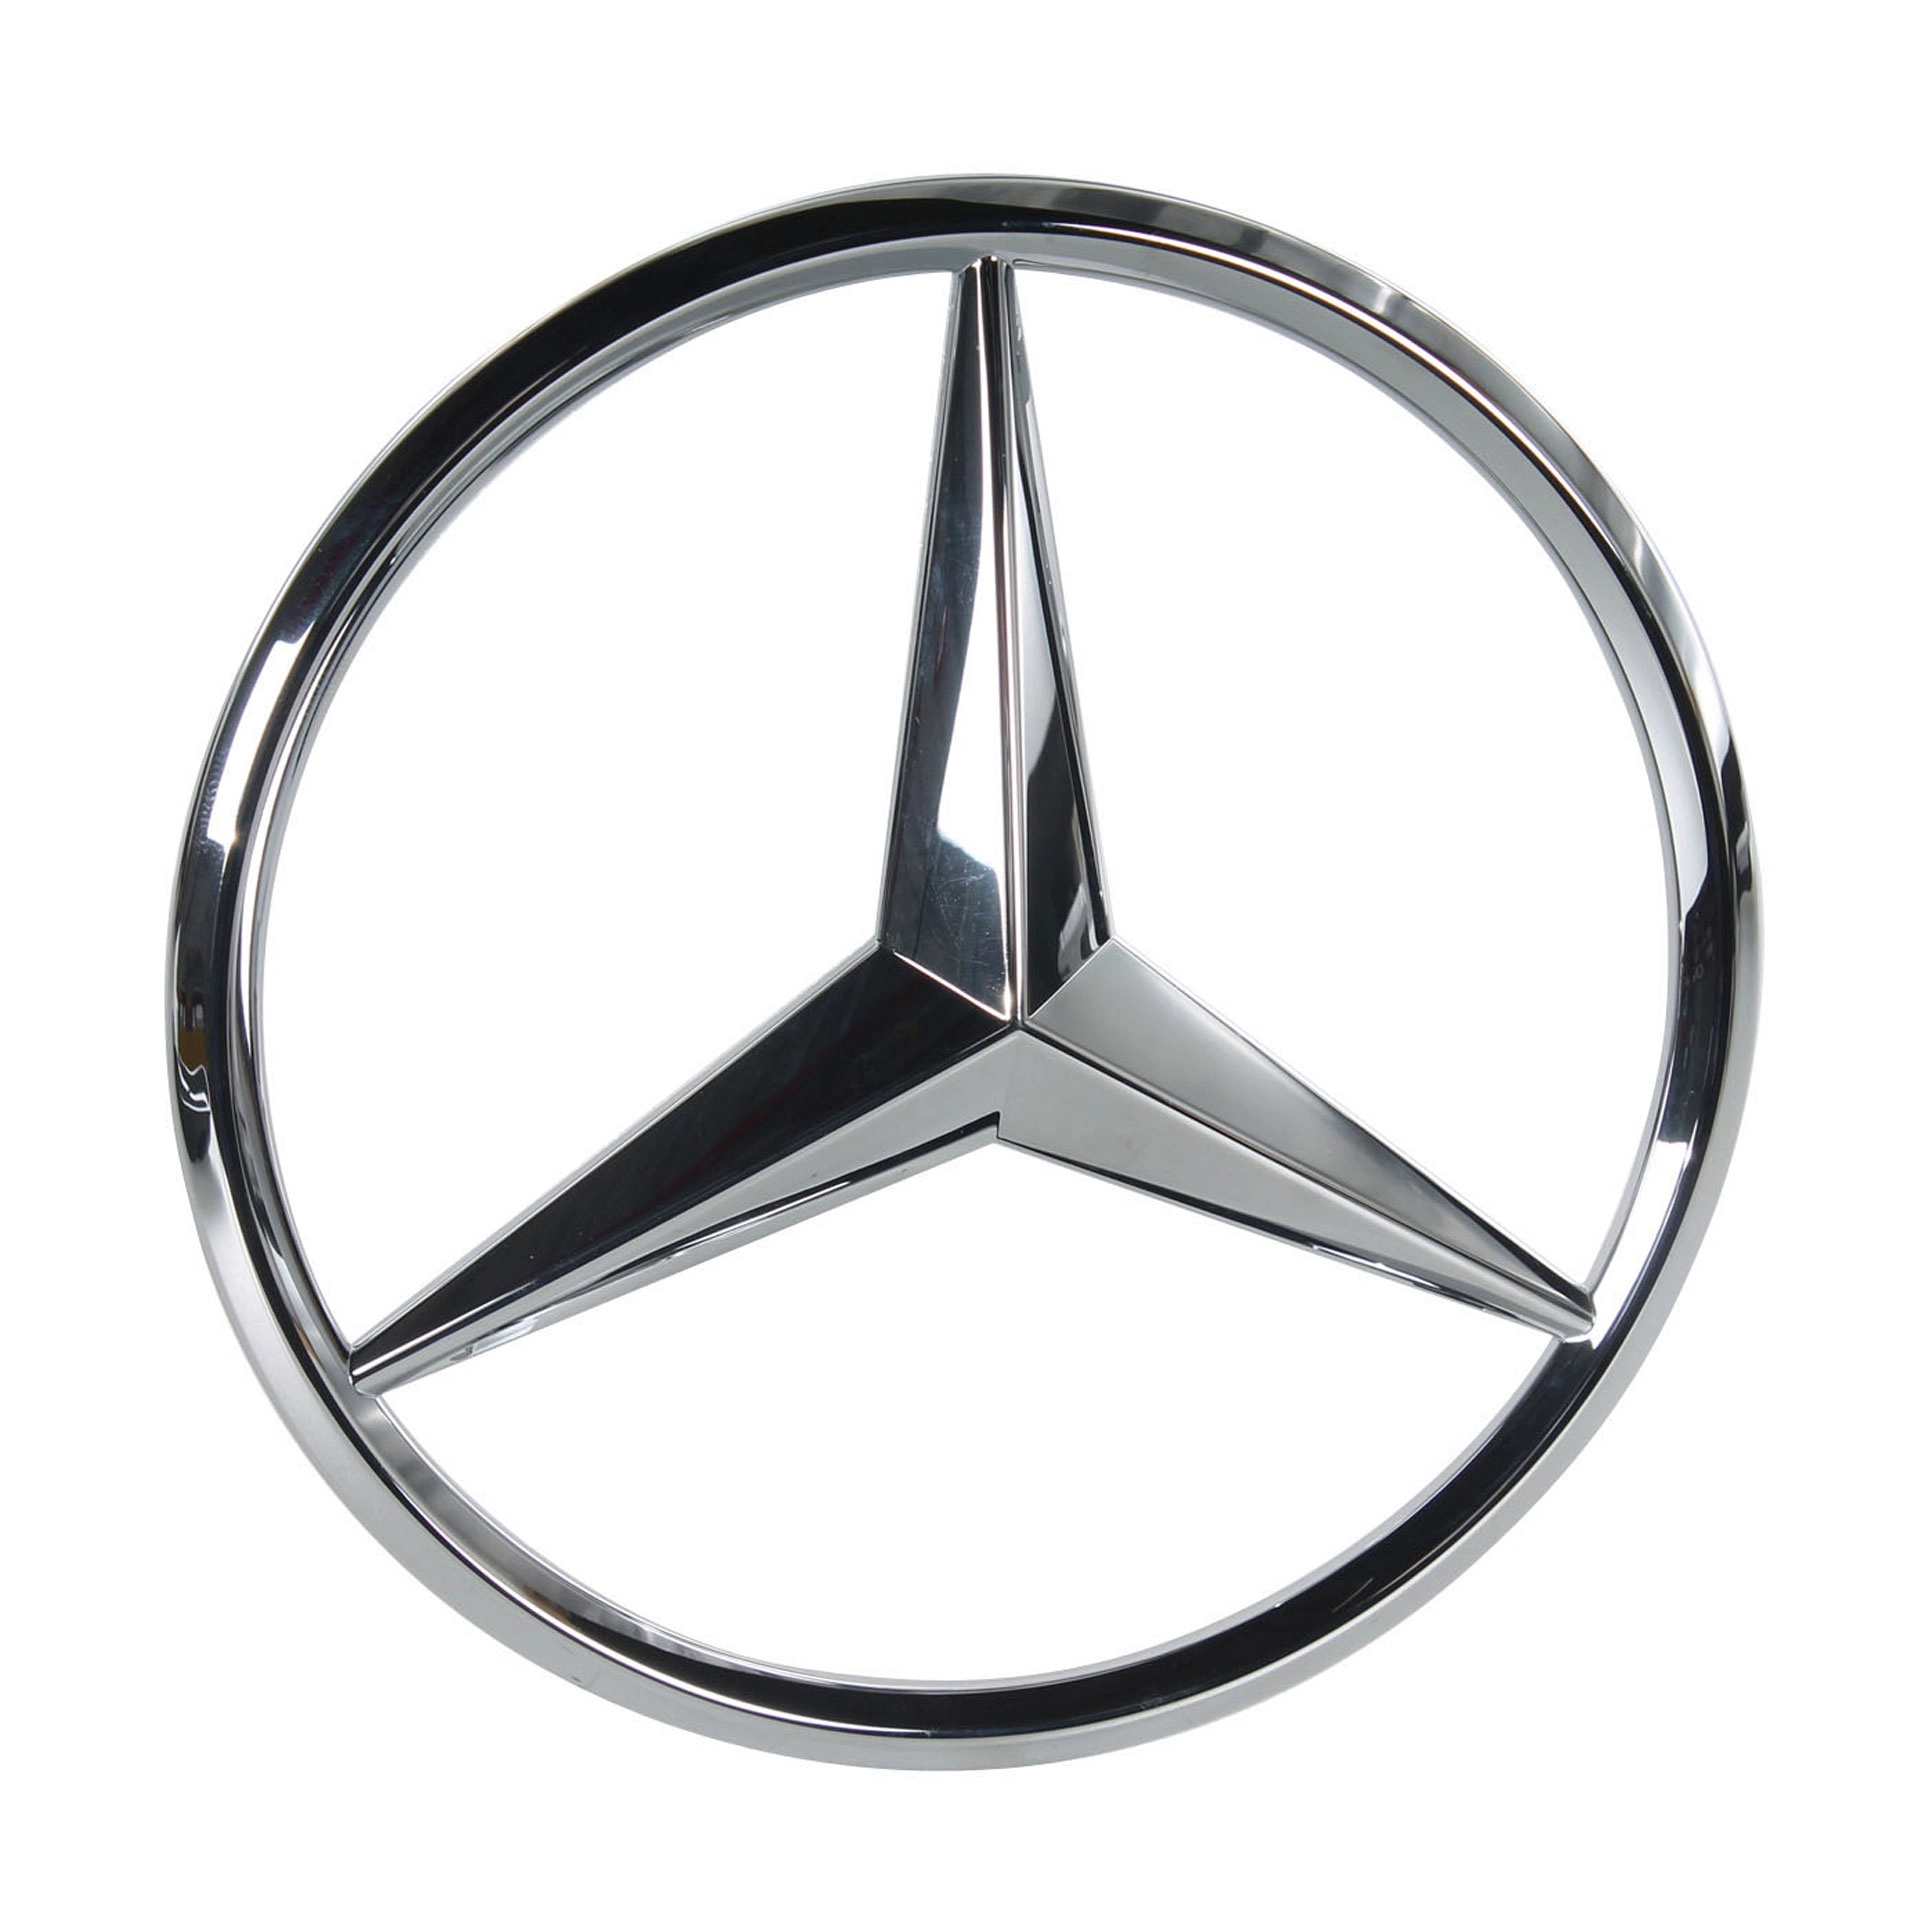 Glanz schwarz mercedes Benz 3 Punkt Stern Emblem Abzeichen für c